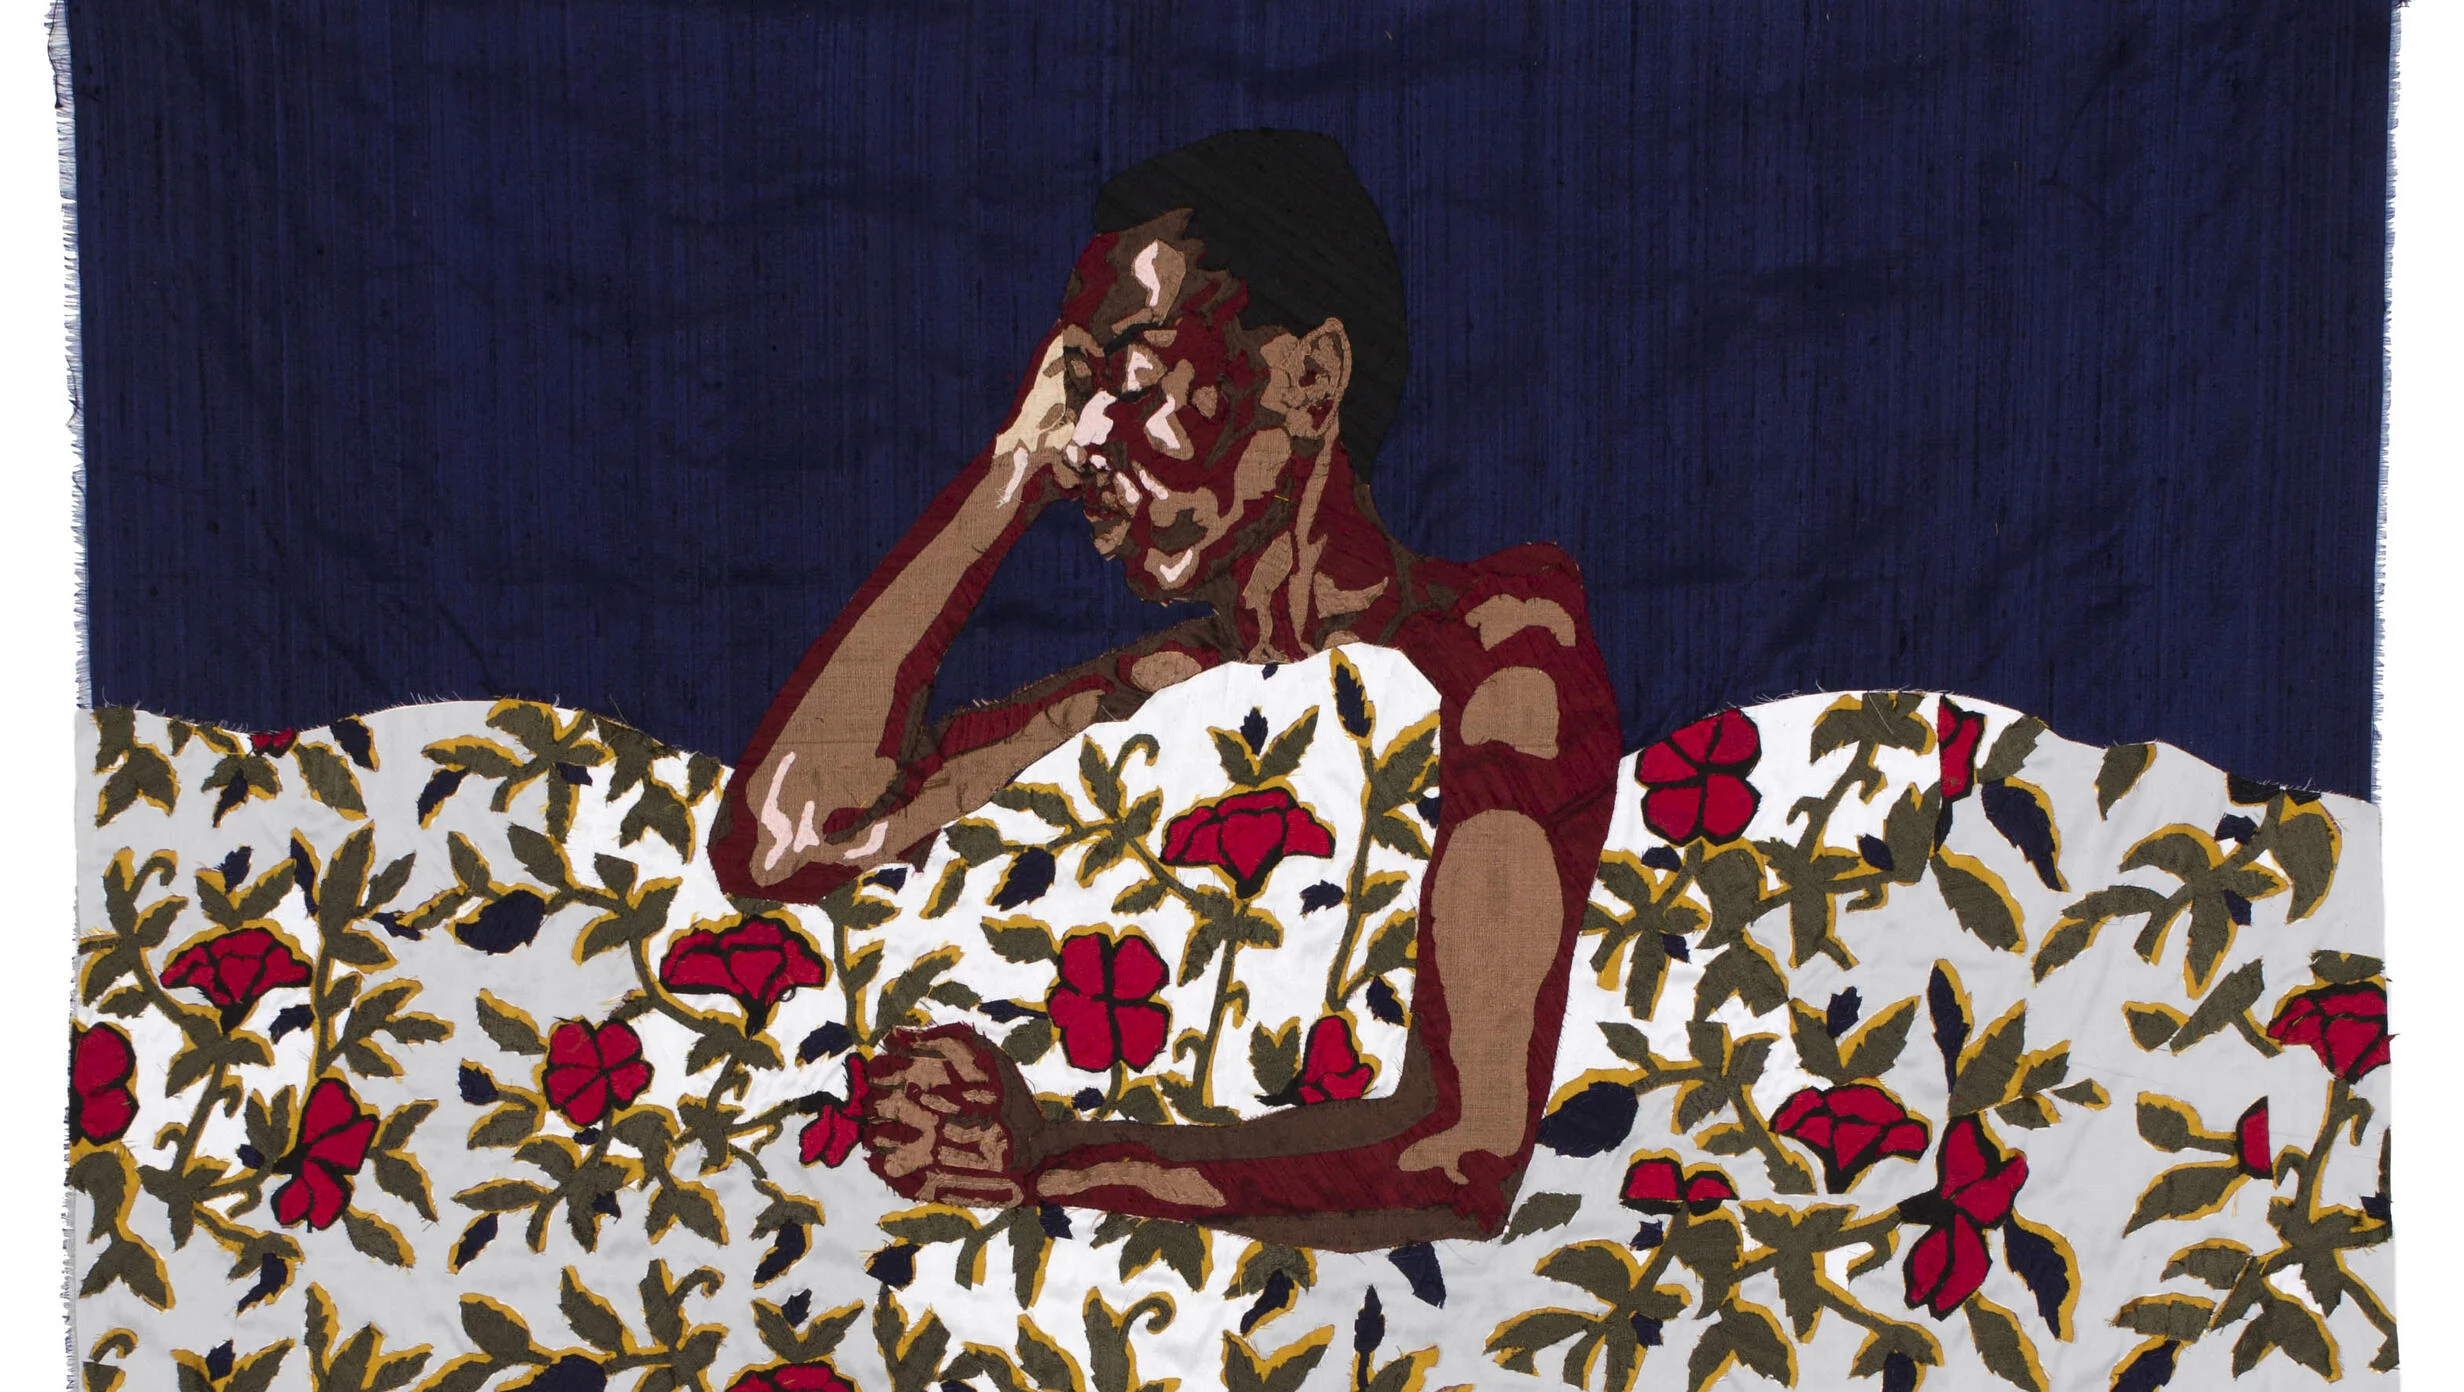 billie zangewa, midnight aura, 100cm x 97cm, hand-stitched silk collage, 2012